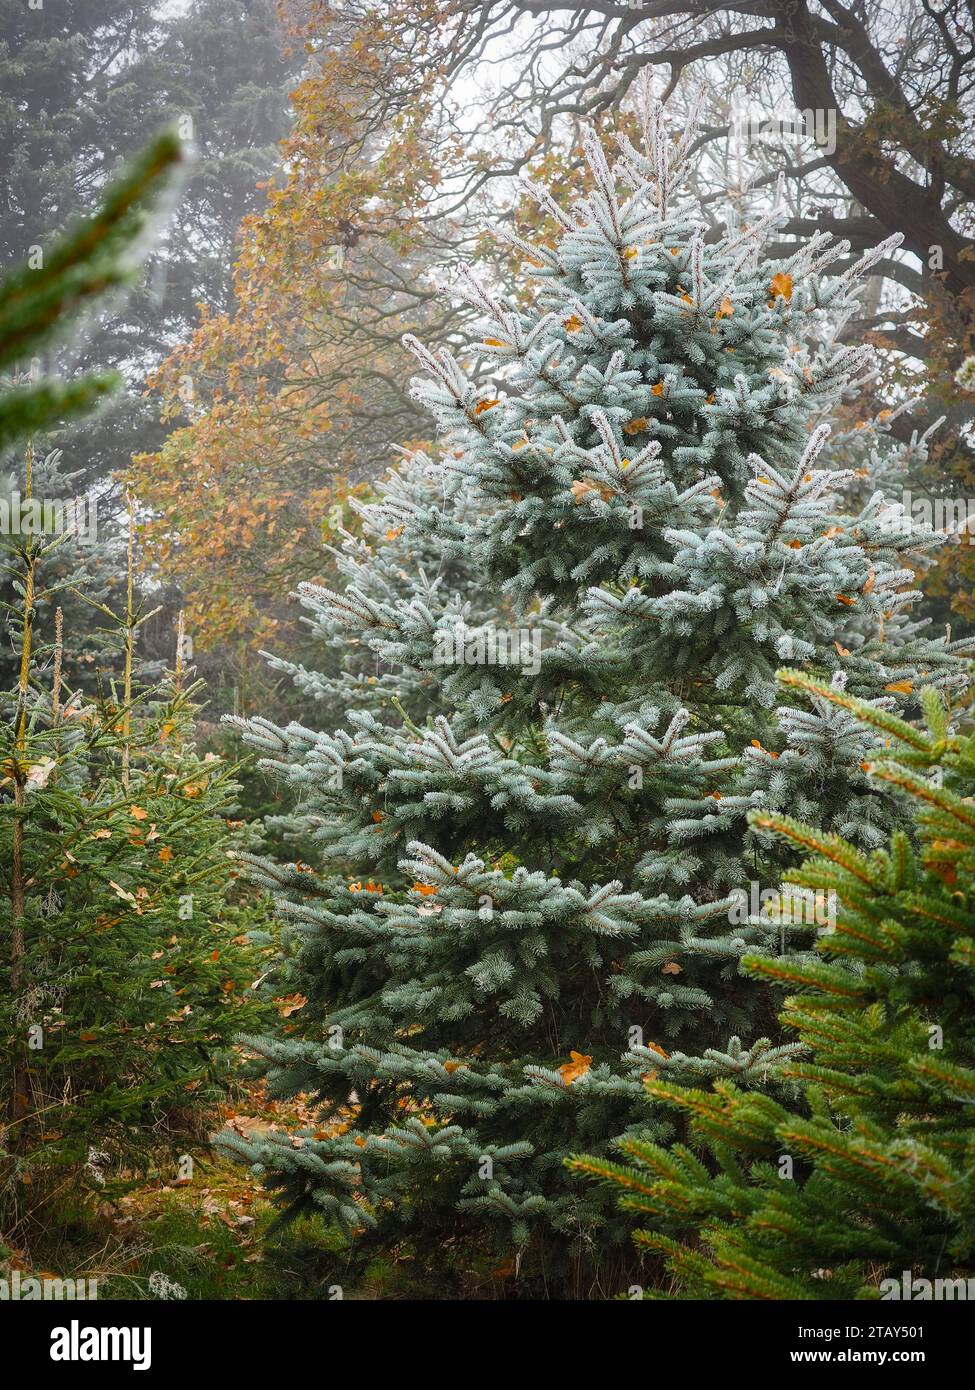 Wunderschöne frostbedeckte immergrüne Nadelbäume an einem sonnigen Wintertag in der britischen Landschaft, umgeben von herbstfarbenen Bäumen und gefallenen Blättern Stockfoto